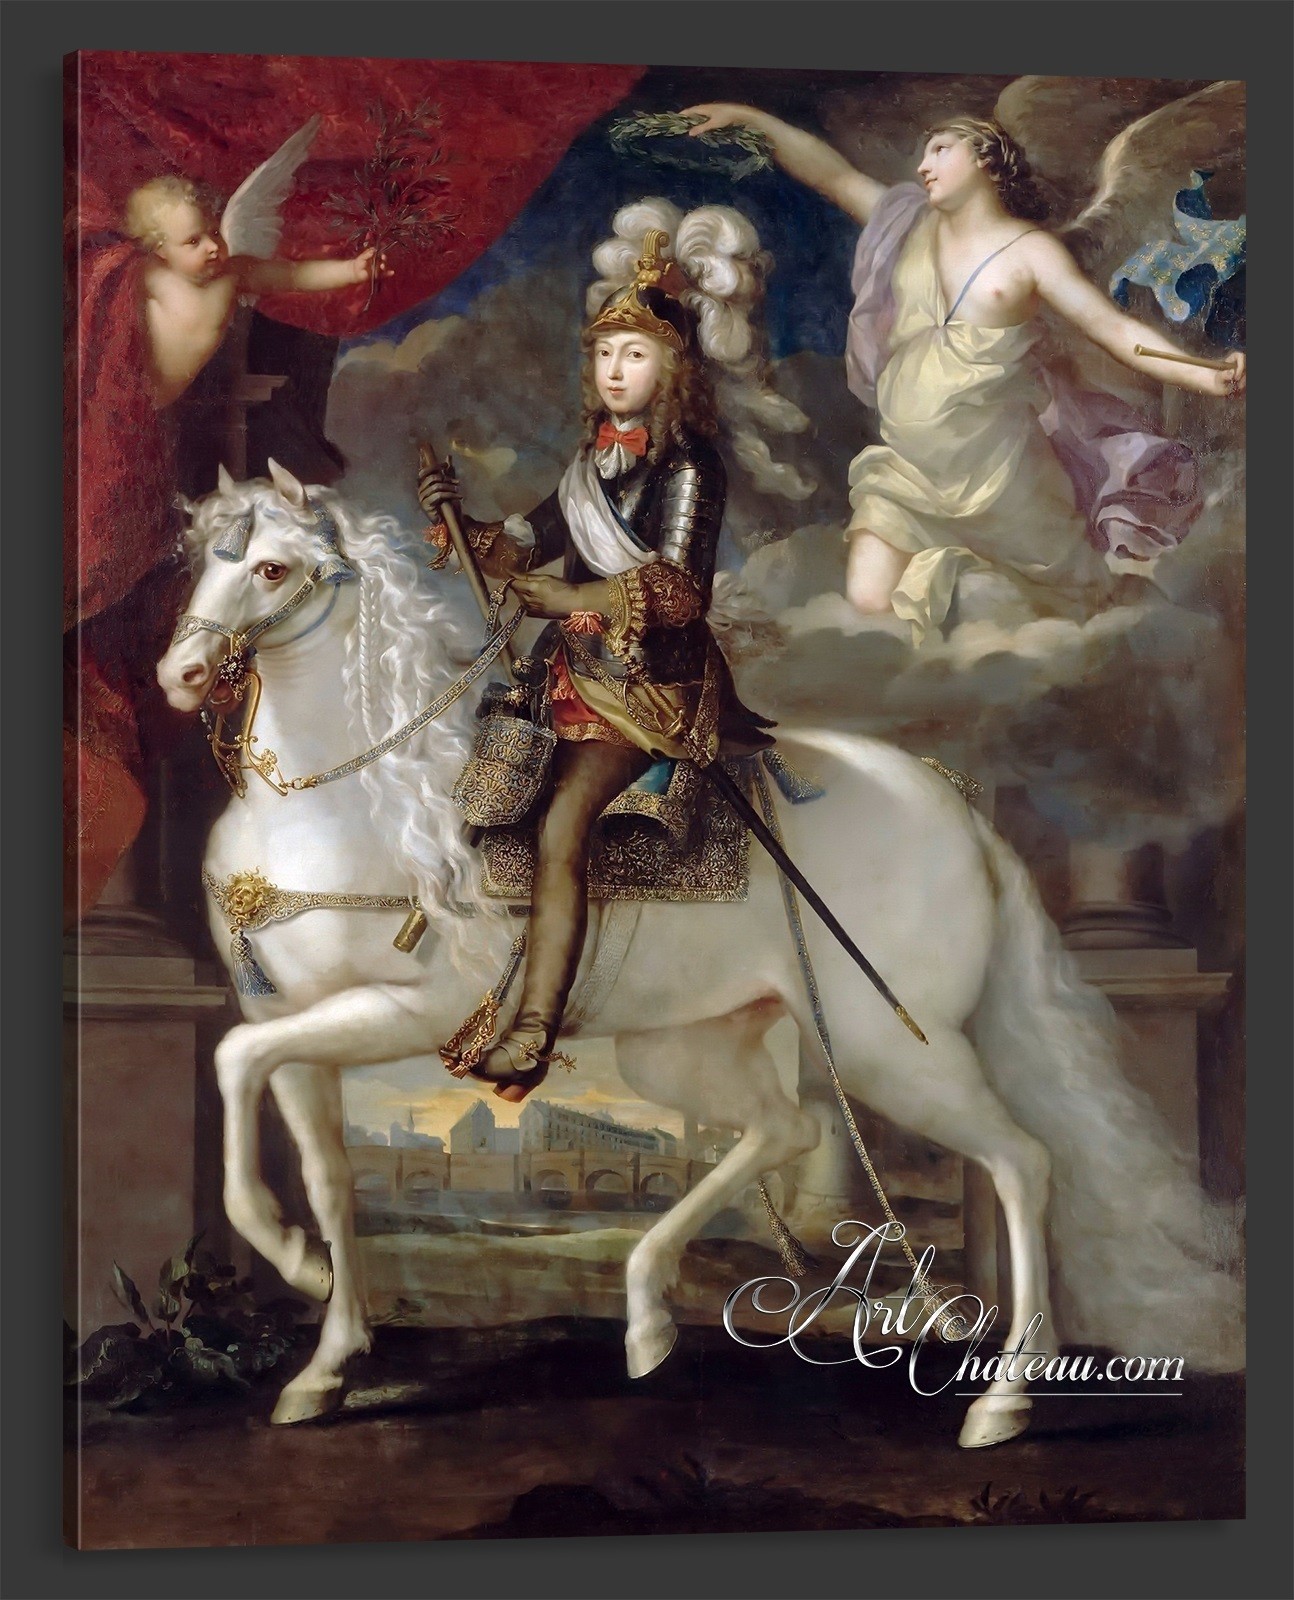 Louis XIV, Boy King of France, after Jean Nocret